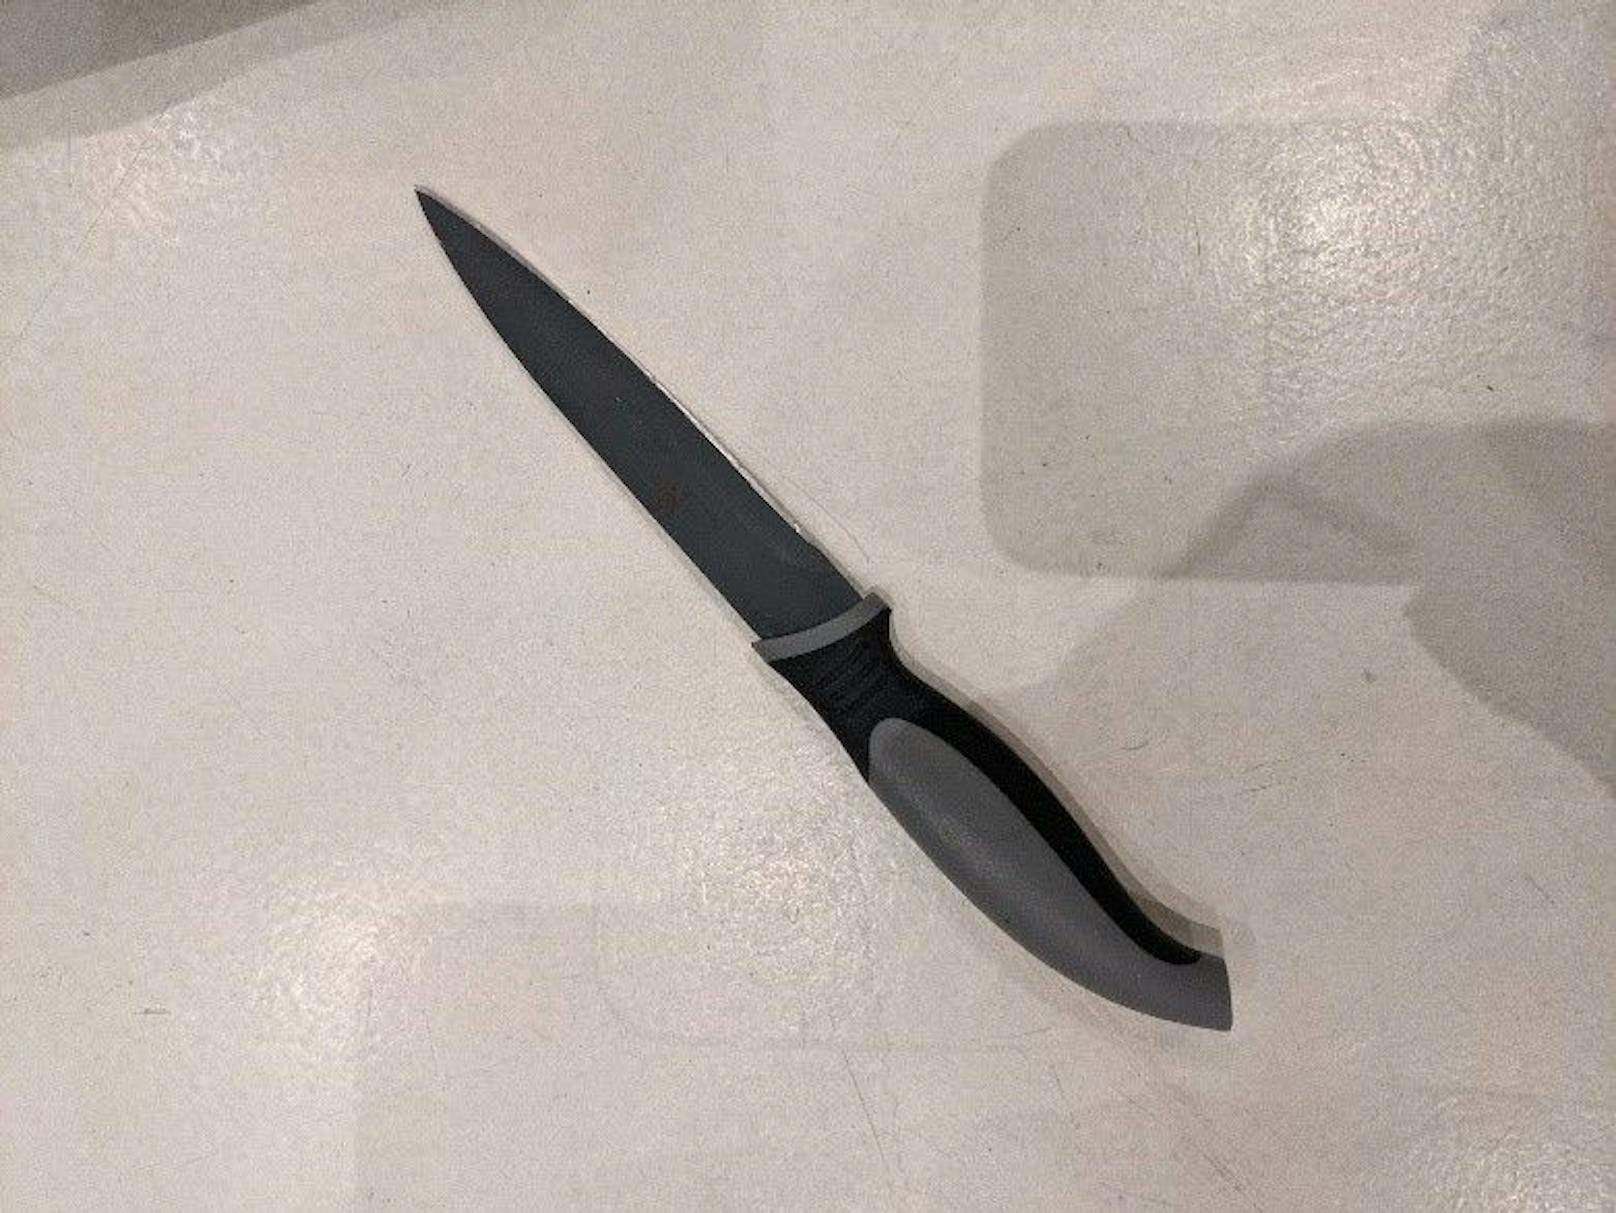 Mit diesem Messer soll der 28-Jährige schwer verletzt worden sein.